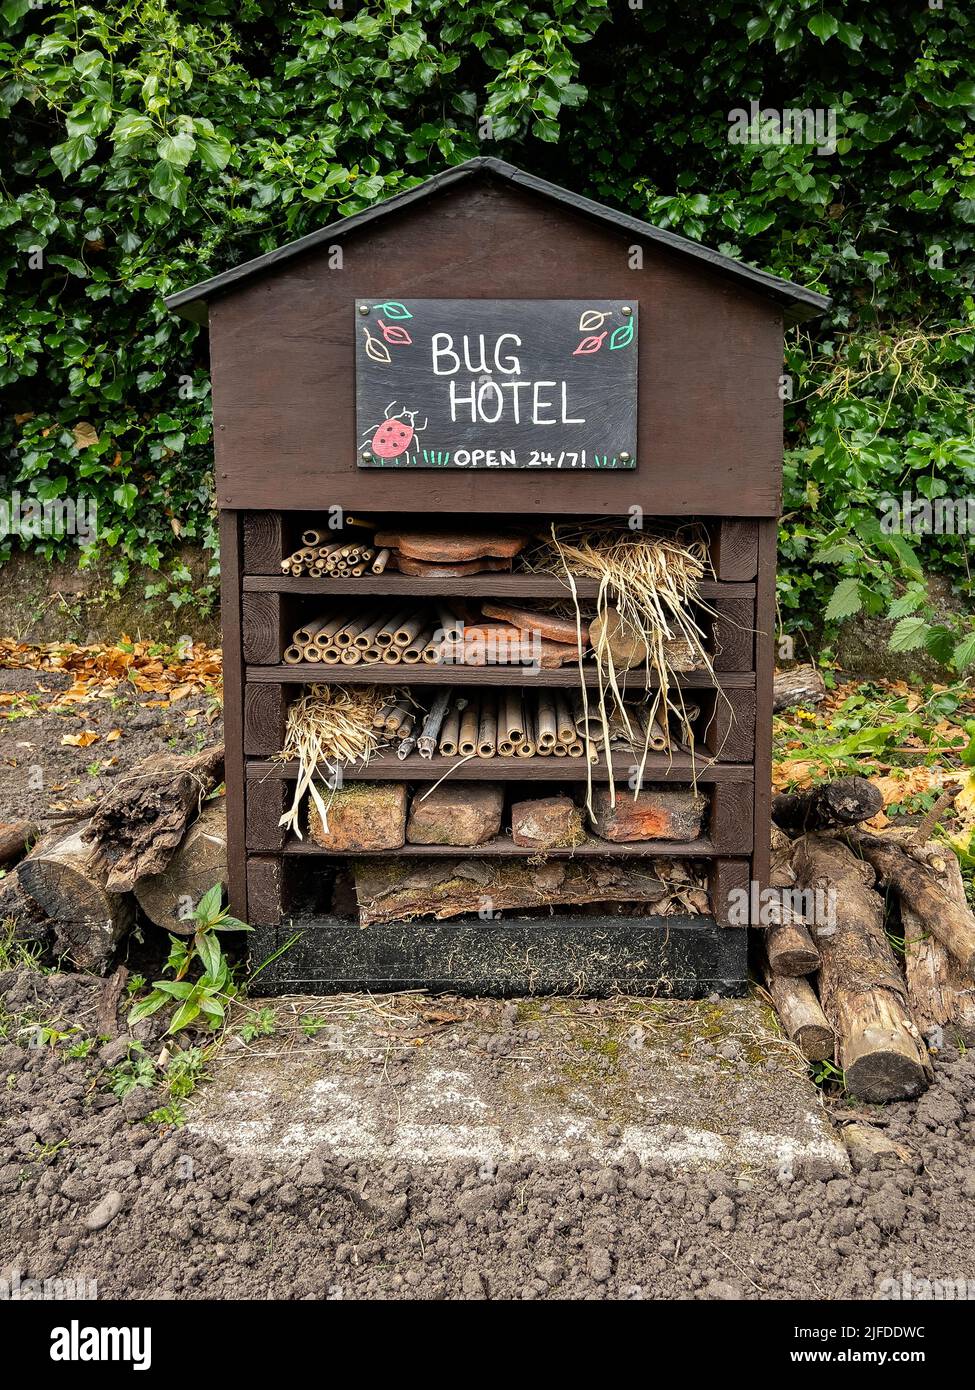 Bug Hotel - un hôtel d'insectes, un hôtel d'insectes ou une maison d'insectes, est une structure faite par l'homme créée pour fournir un abri pour les insectes. Ils peuvent venir dans une variété de s. Banque D'Images